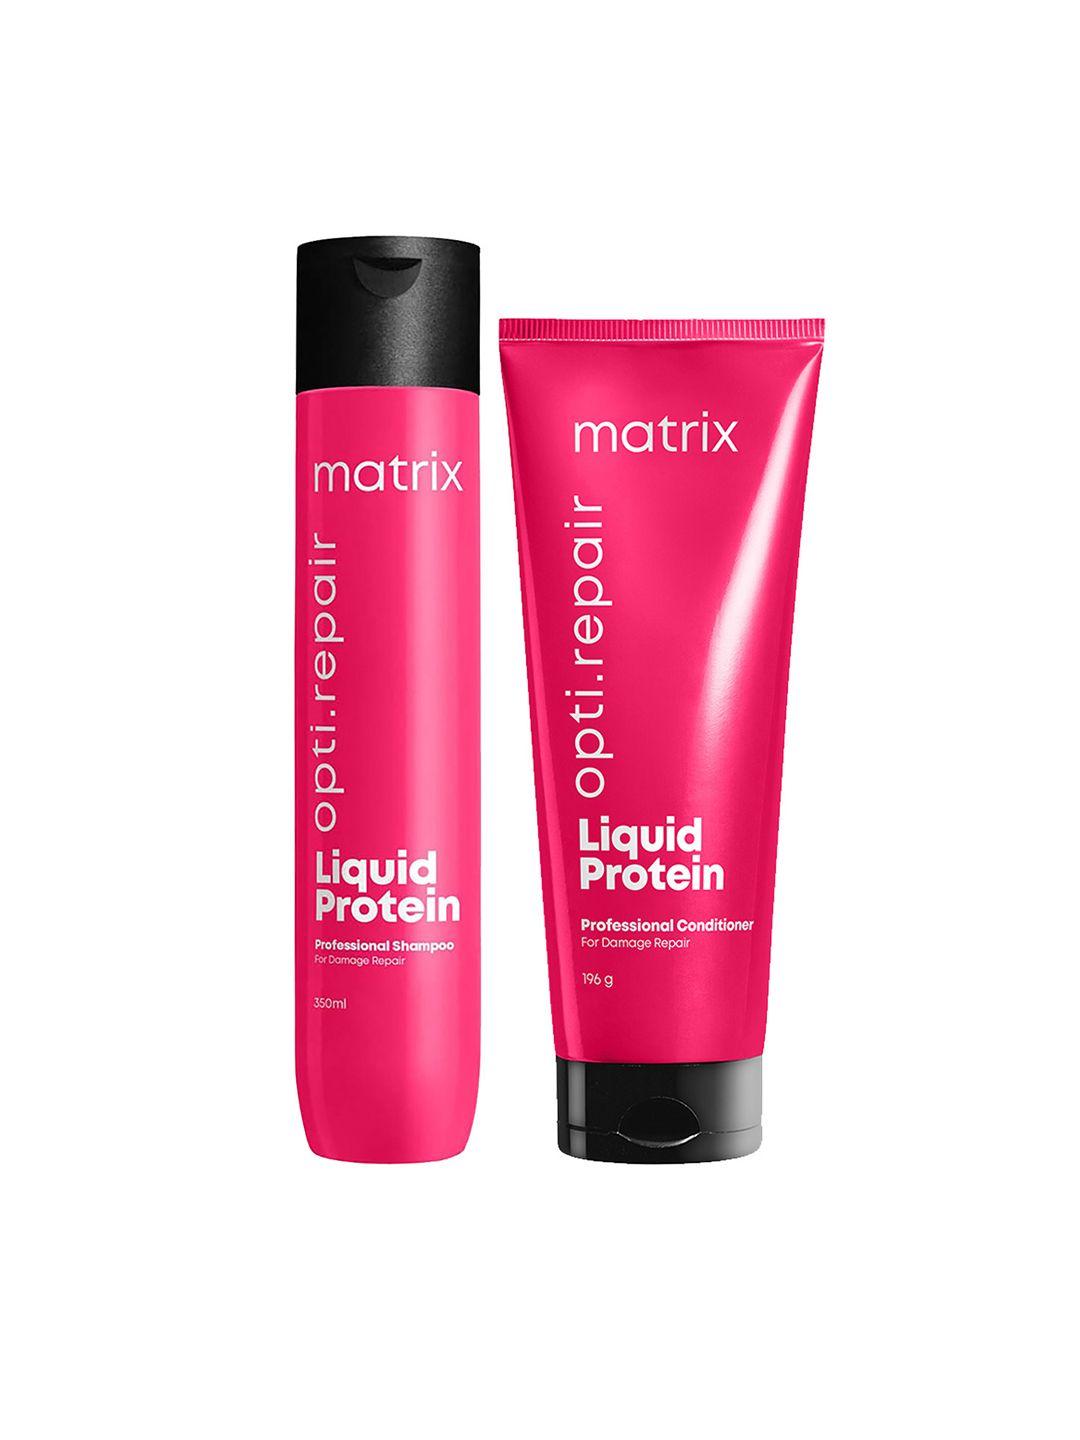 matrix-opti-repair-liquid-protein-professional-shampoo-350ml-&-conditioner-196g